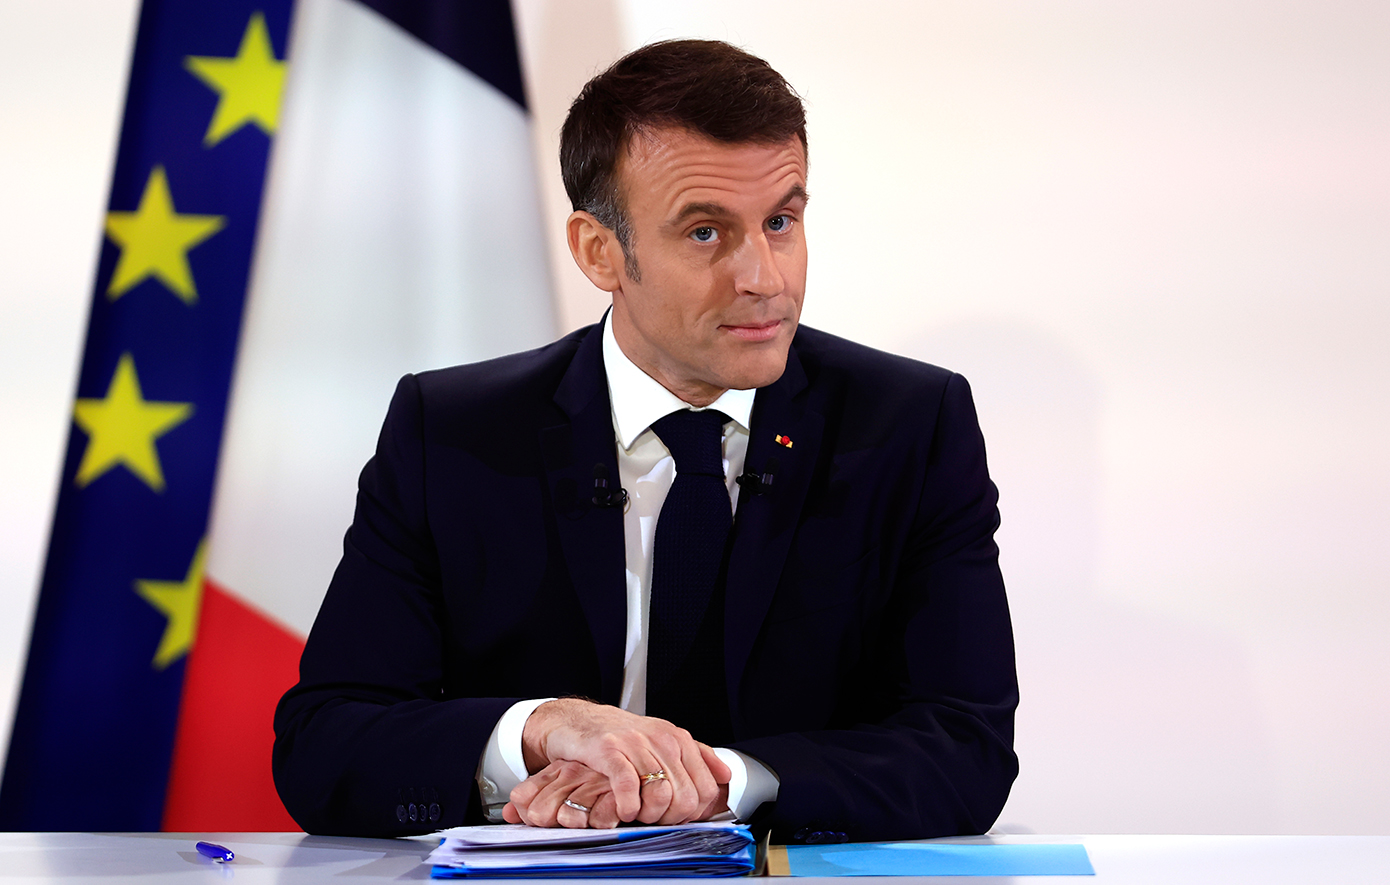 Ξανά σε προεκλογικούς ρυθμούς τα κόμματα στη Γαλλία μετά το τέλος των Ευρωεκλογών